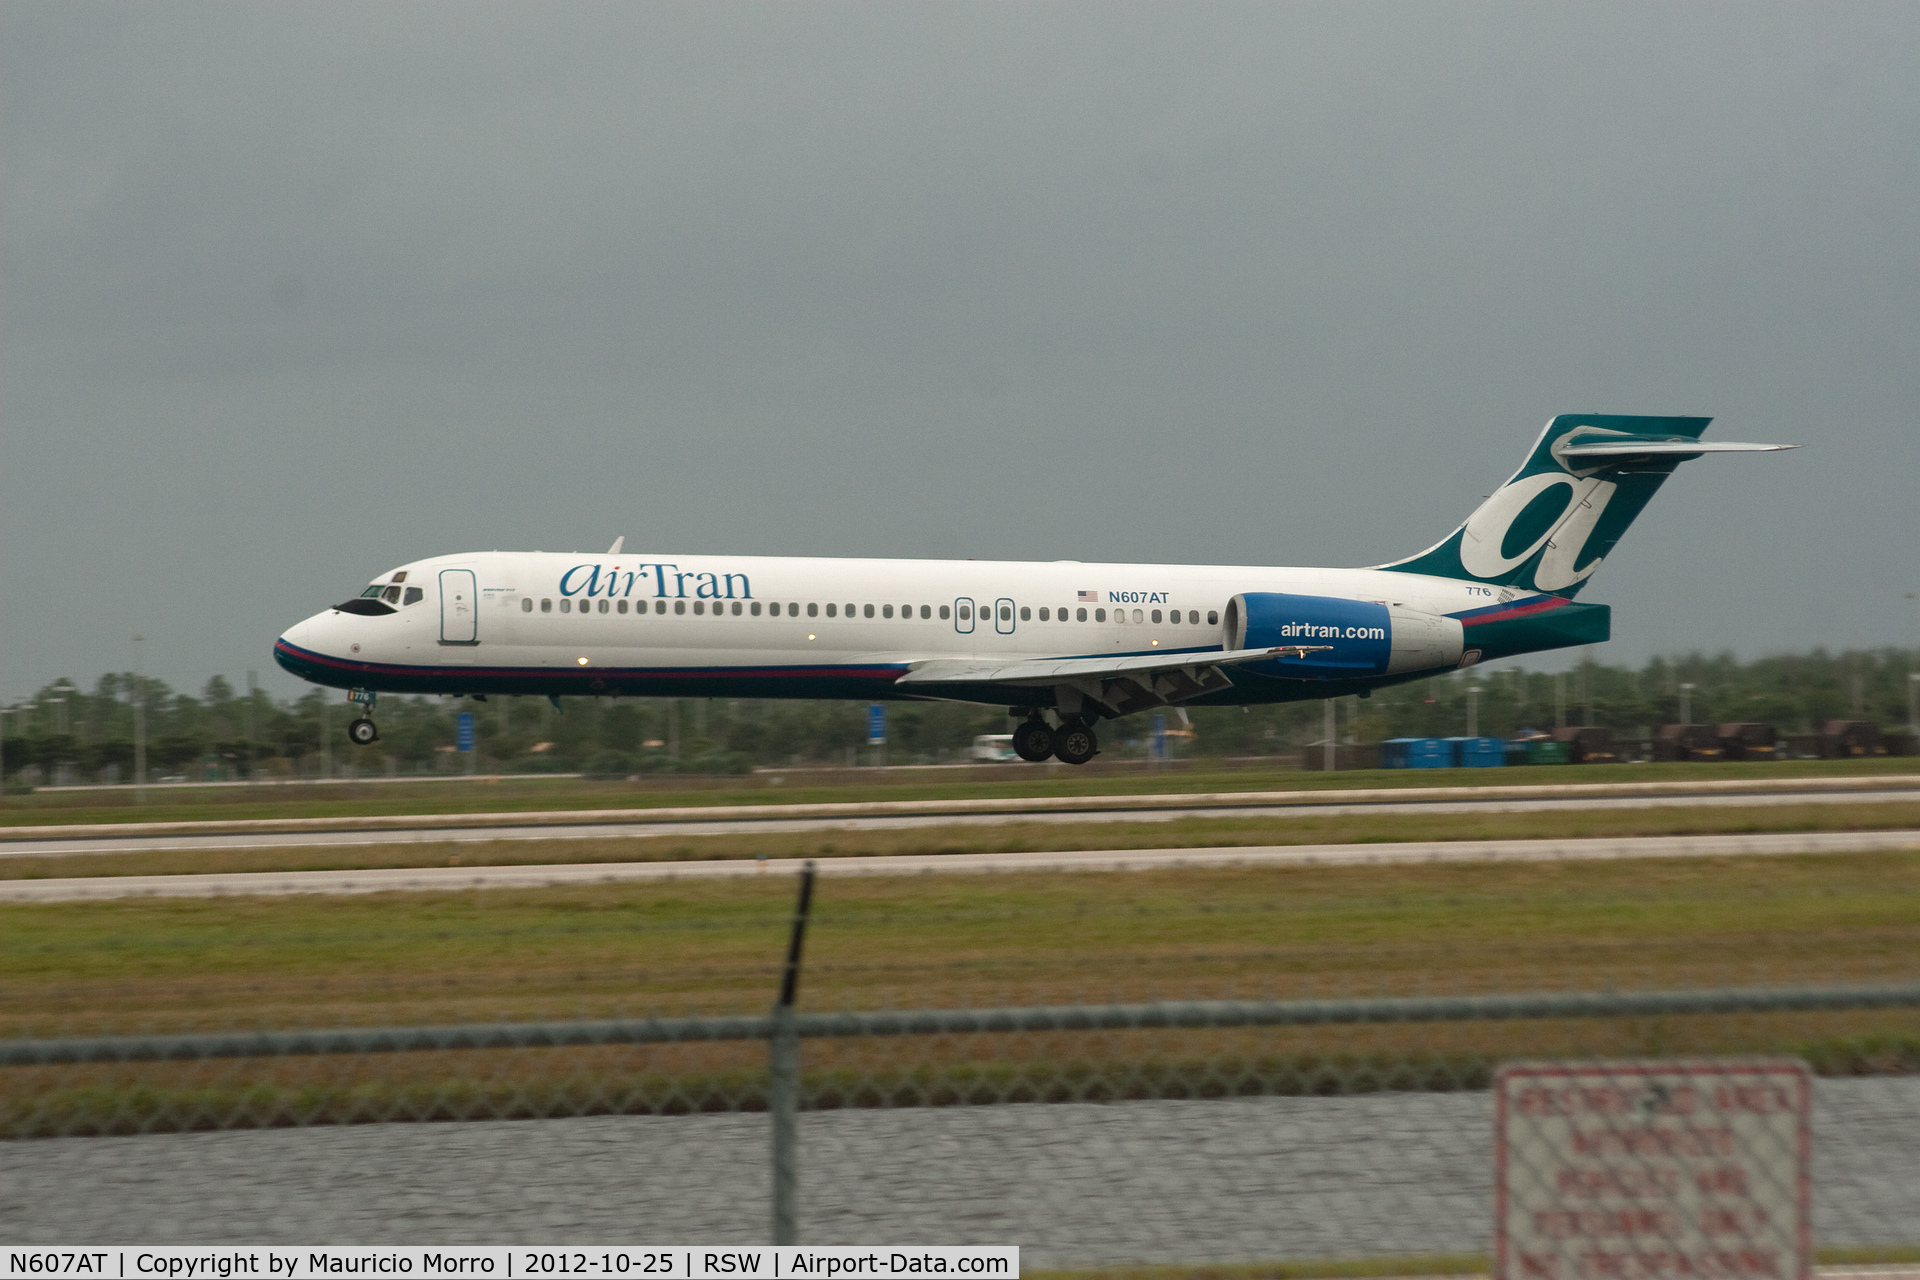 N607AT, 2000 Boeing 717-200 C/N 55074, Taking Off RWY 6